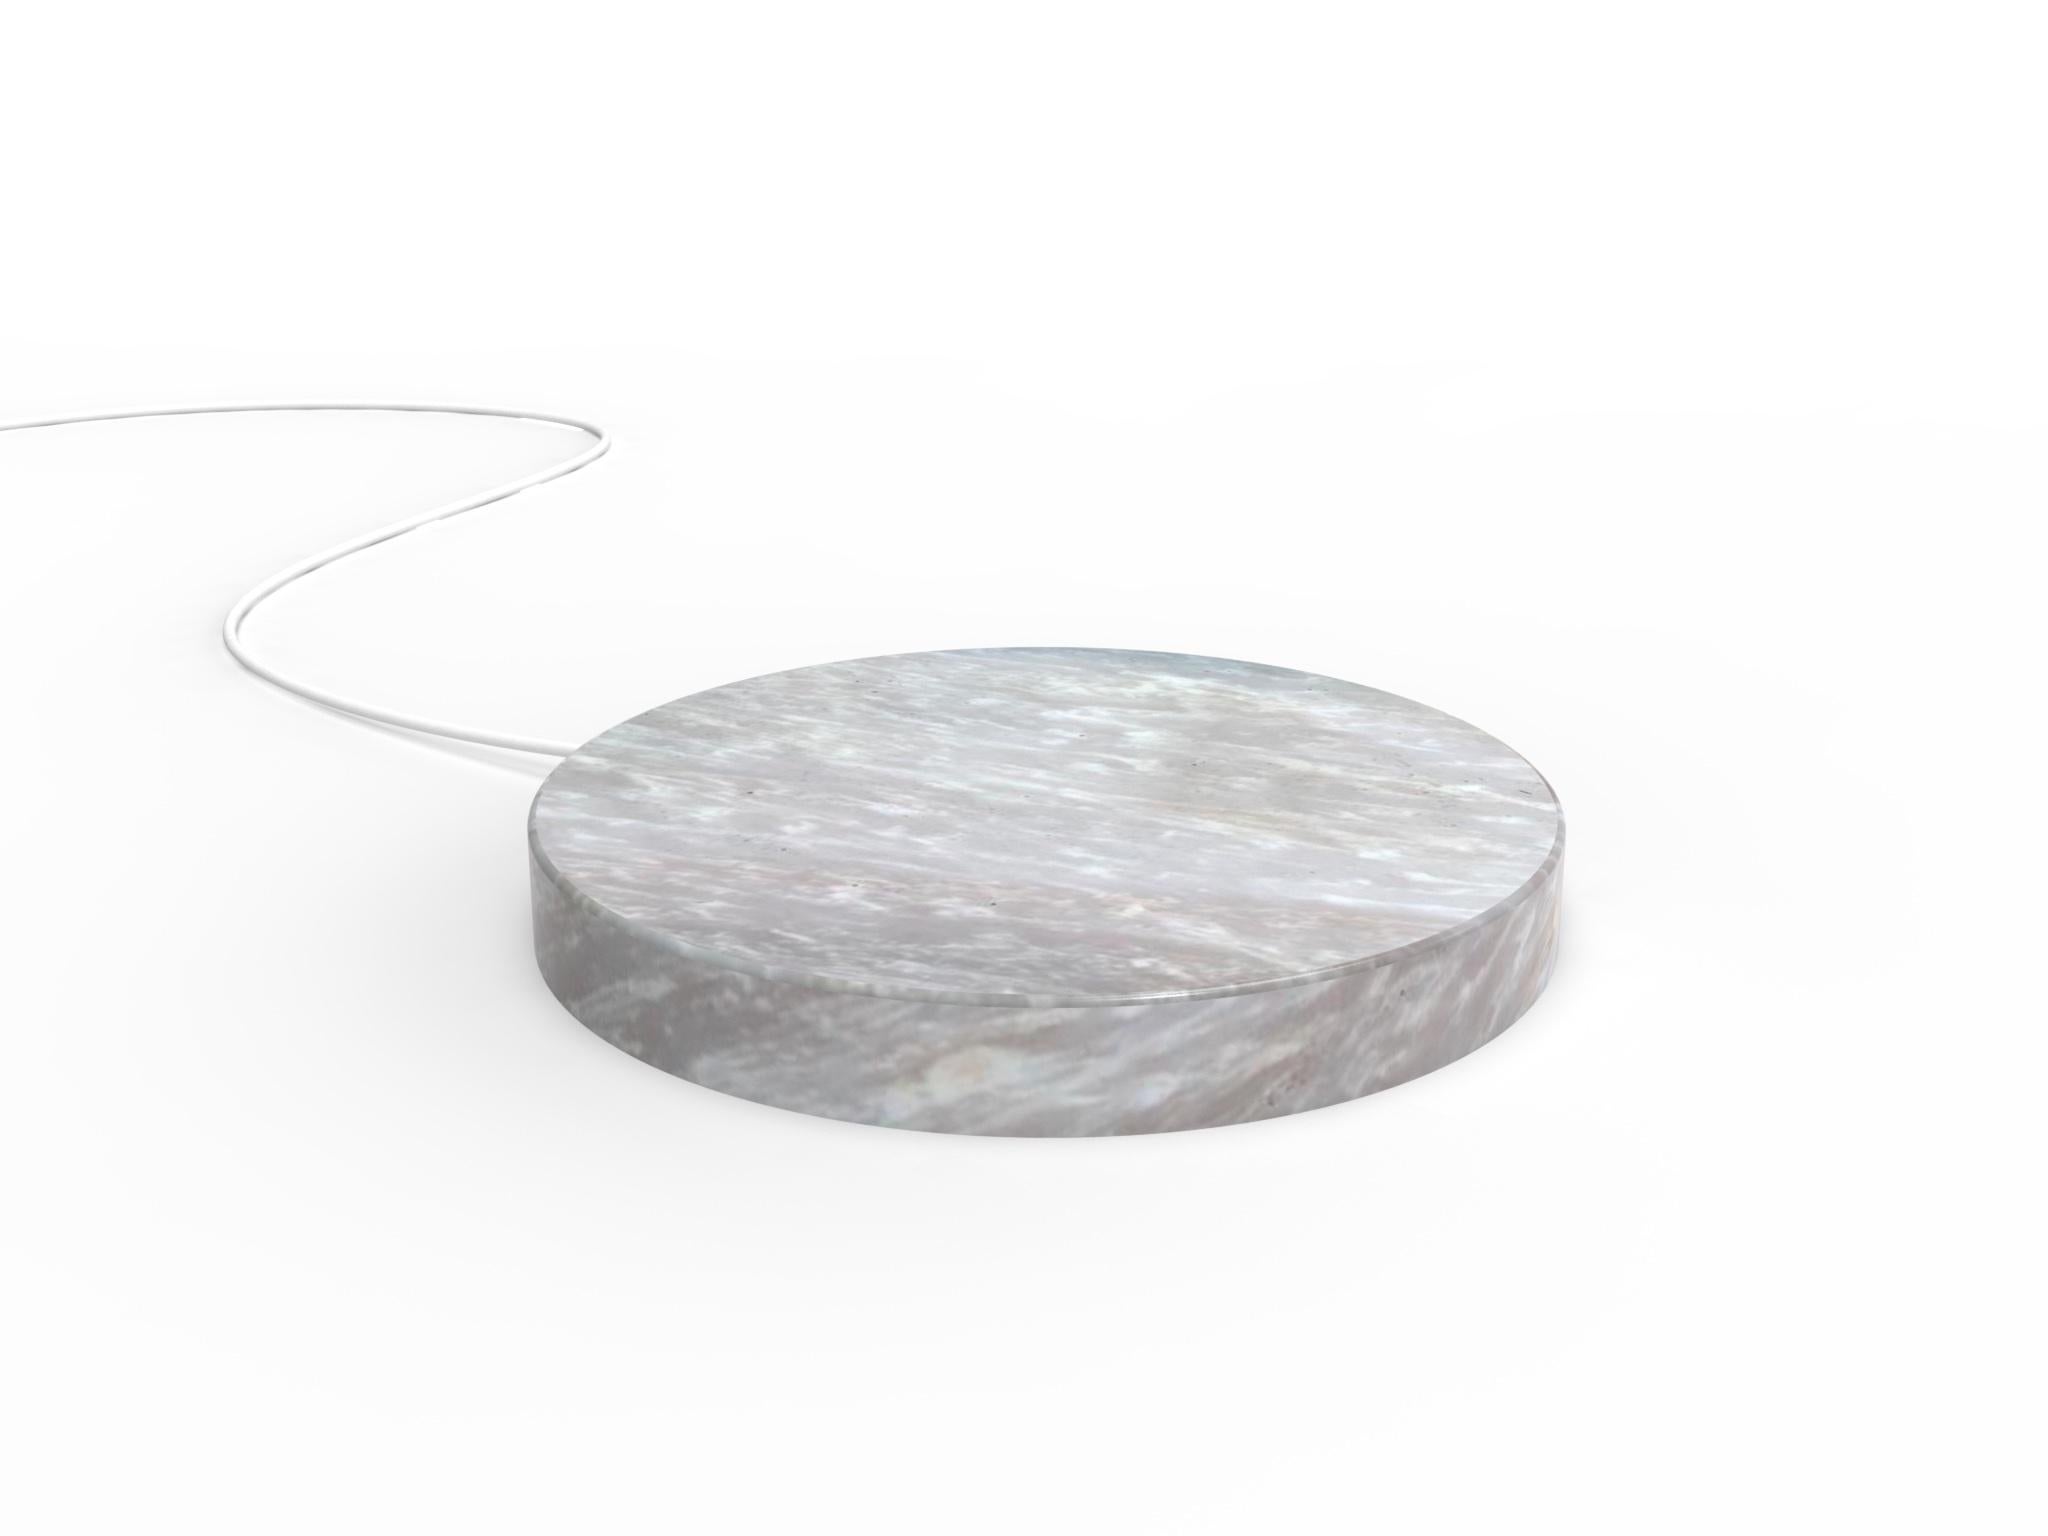 Une base en marbre,
qui rechargent rapidement votre téléphone, avec une touche de magie.
 
Un cercle, 
une pierre, 
réalisé avec le soin que requiert le marbre.

Une puissante technologie de recharge sans fil assure une alimentation efficace et